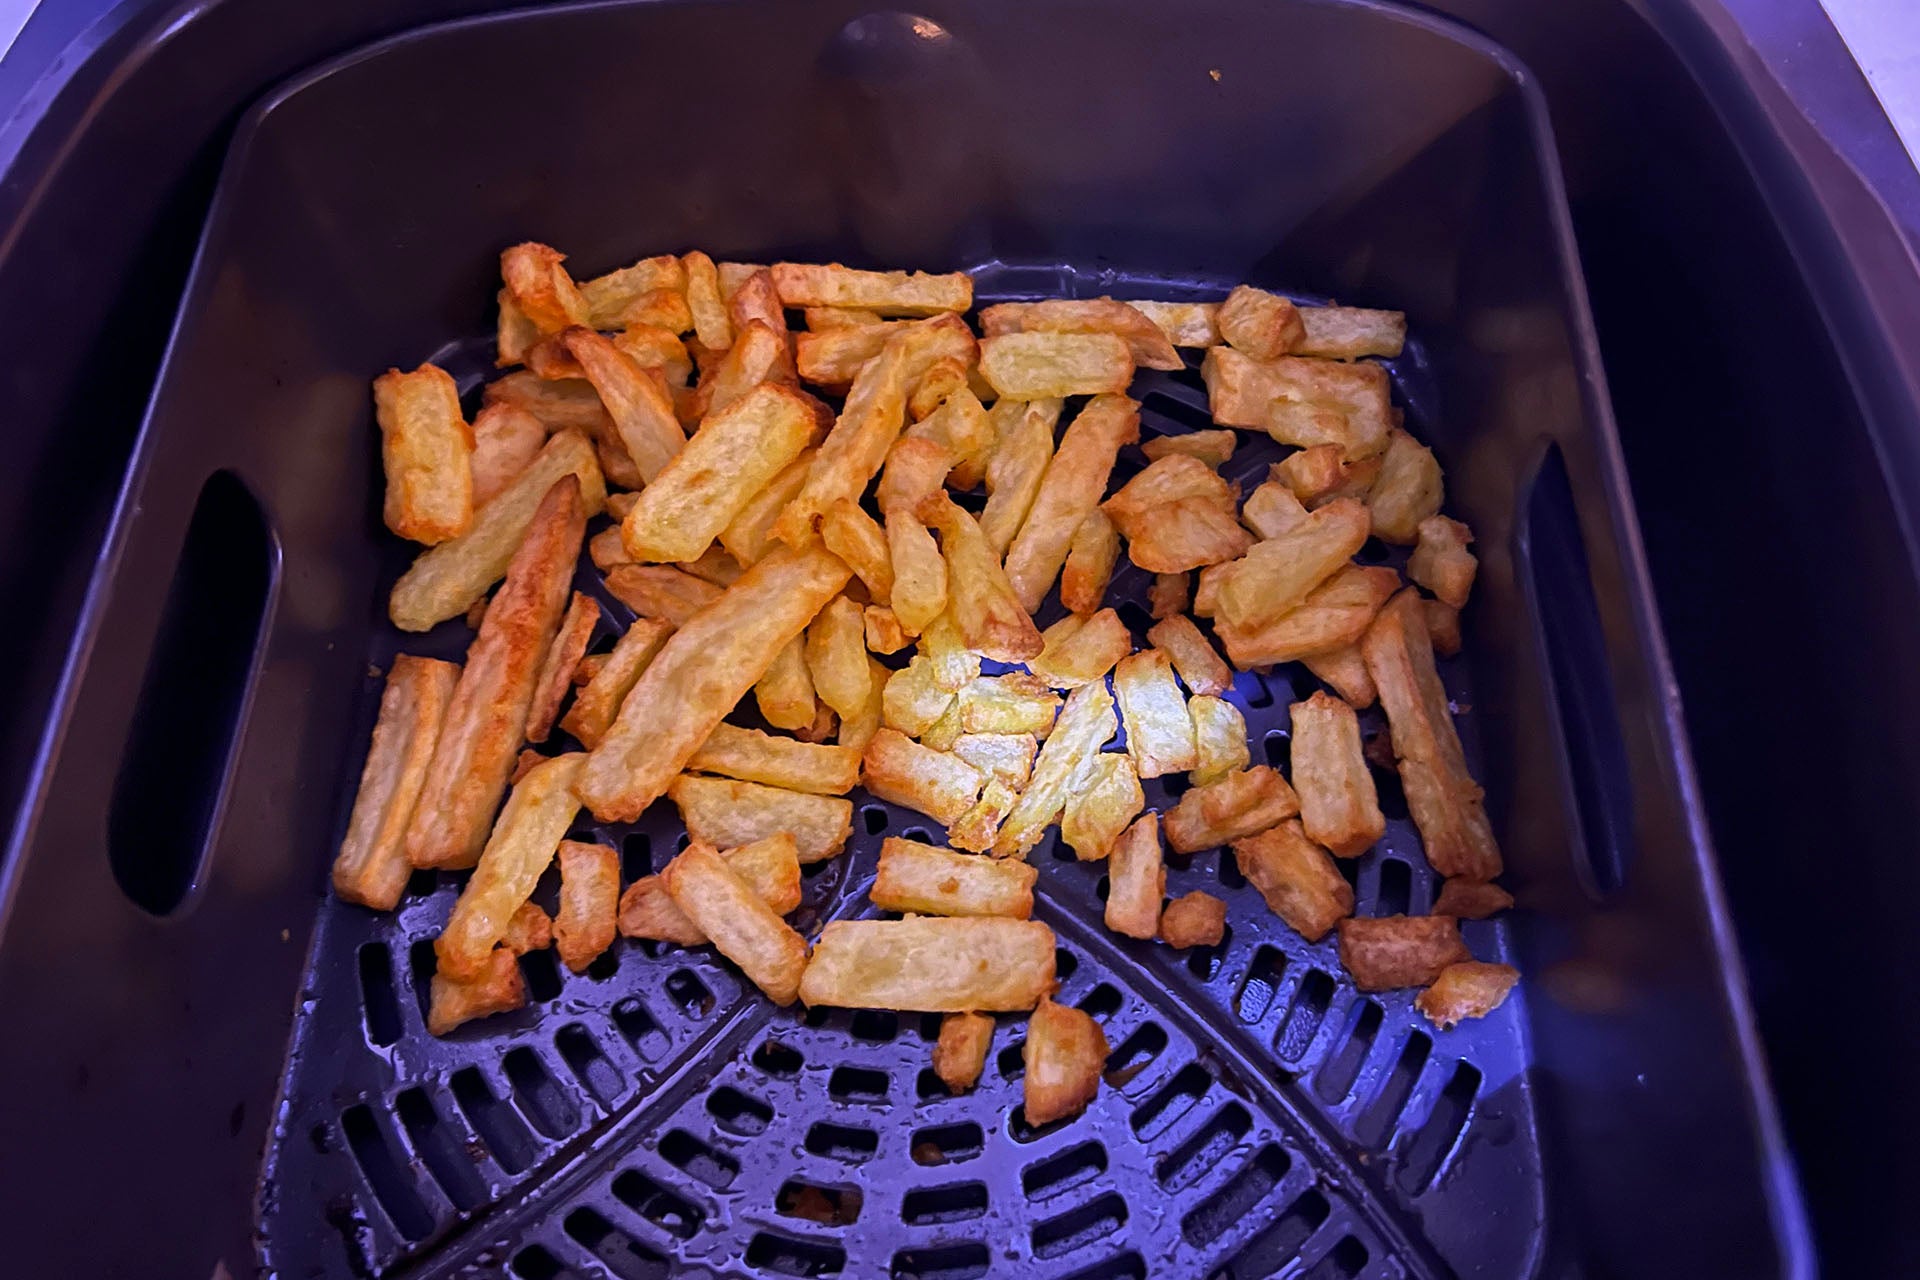 Last fries in the air fryer